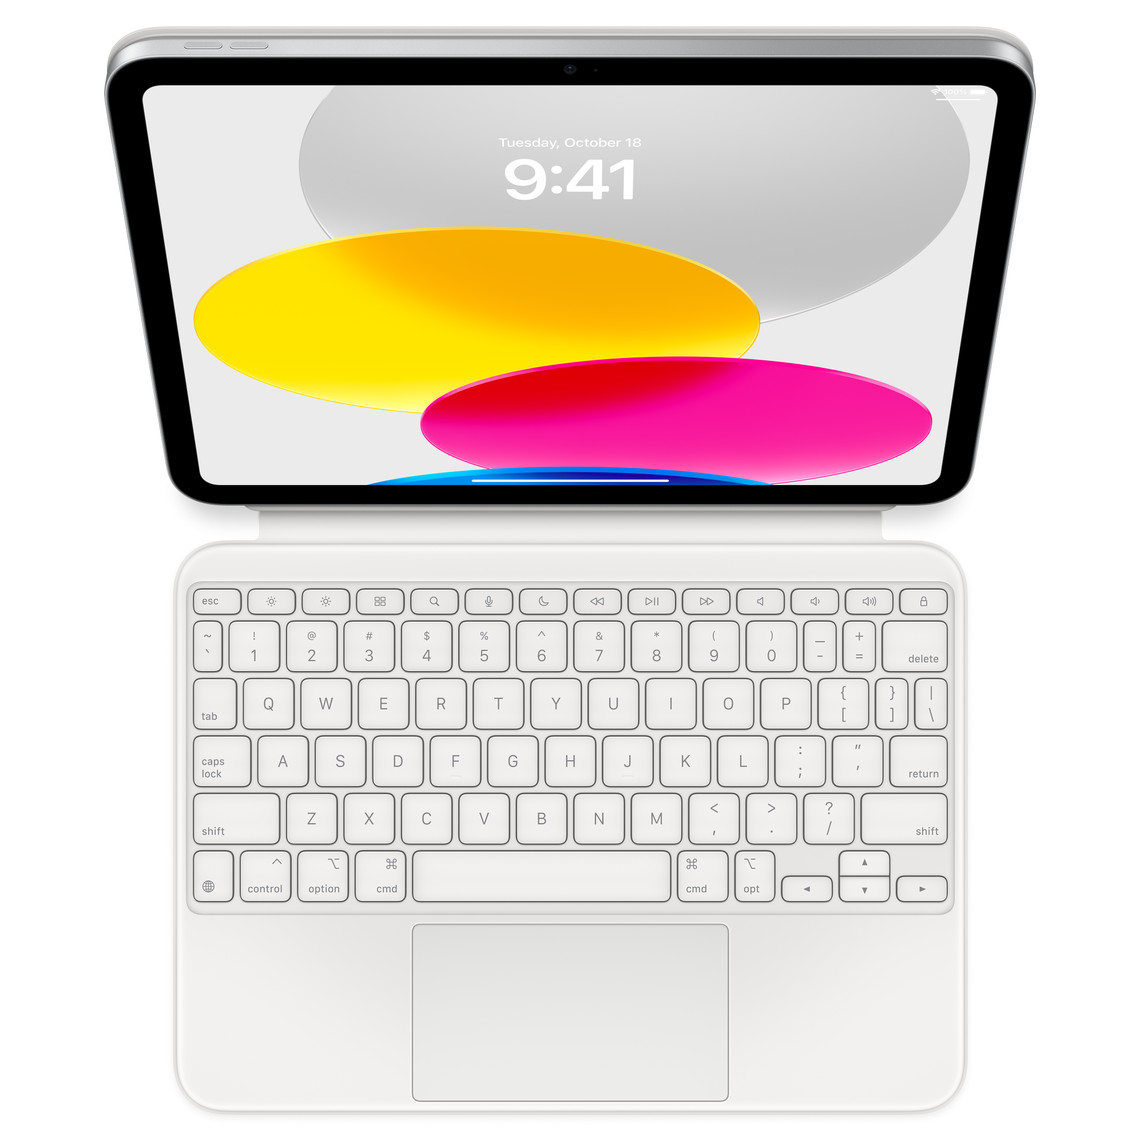 Widok od góry na iPada połączonego z leżącym płasko akcesorium Magic Keyboard Folio. Na ekranie widoczna ilustracja z kolorowymi kręgami.